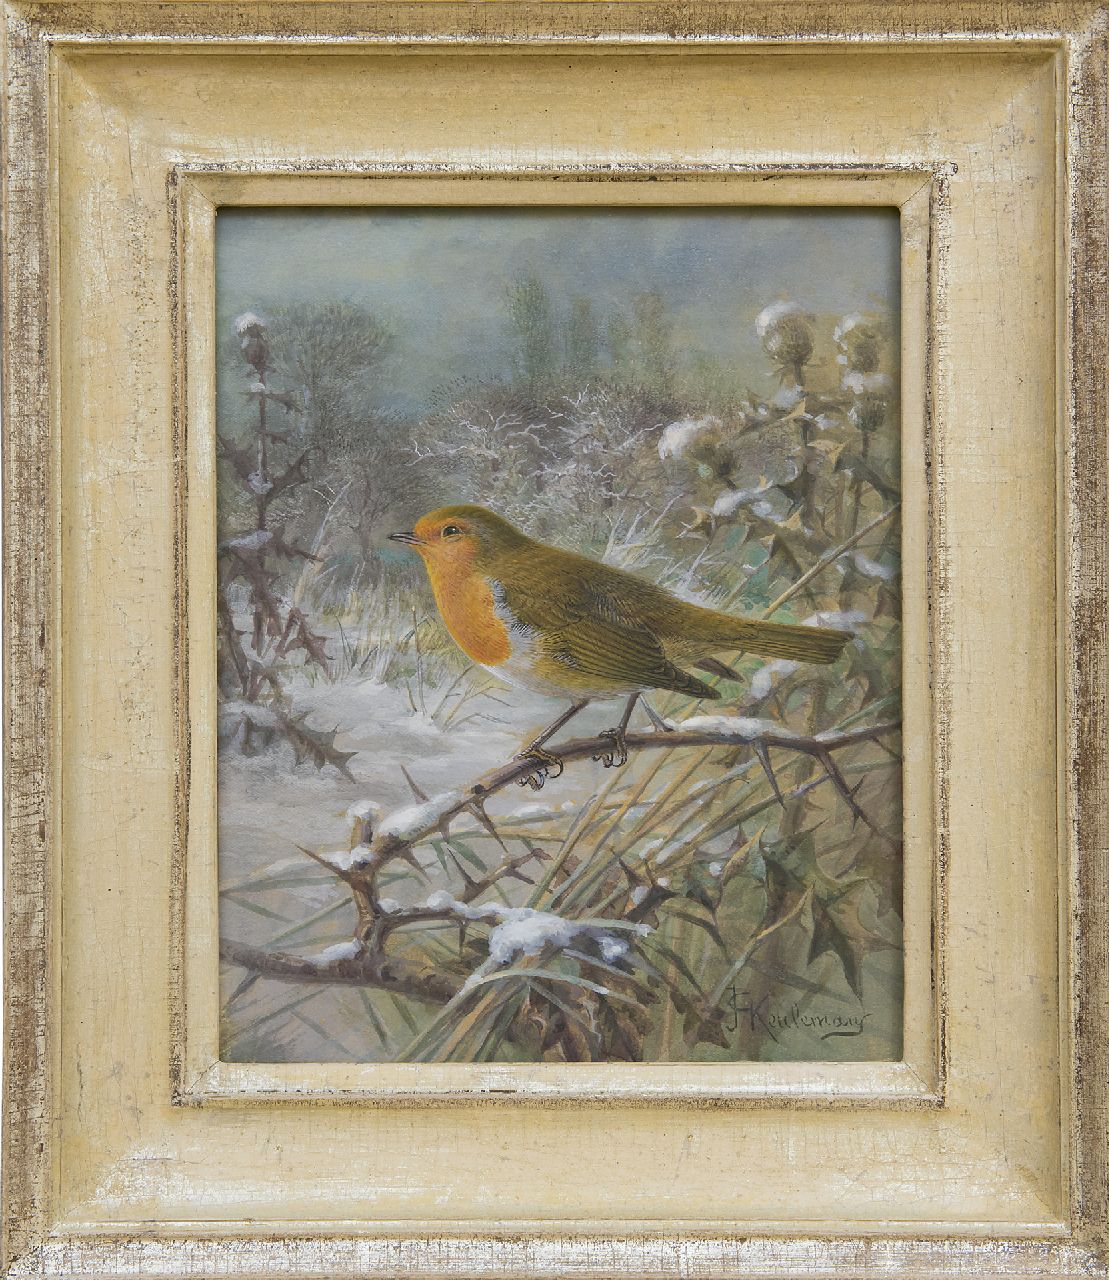 Keulemans J.G.  | Johannes Gerardus Keulemans, A robin in a snowy landscape, gouache on paper 21.5 x 17.0 cm, signed l.r.